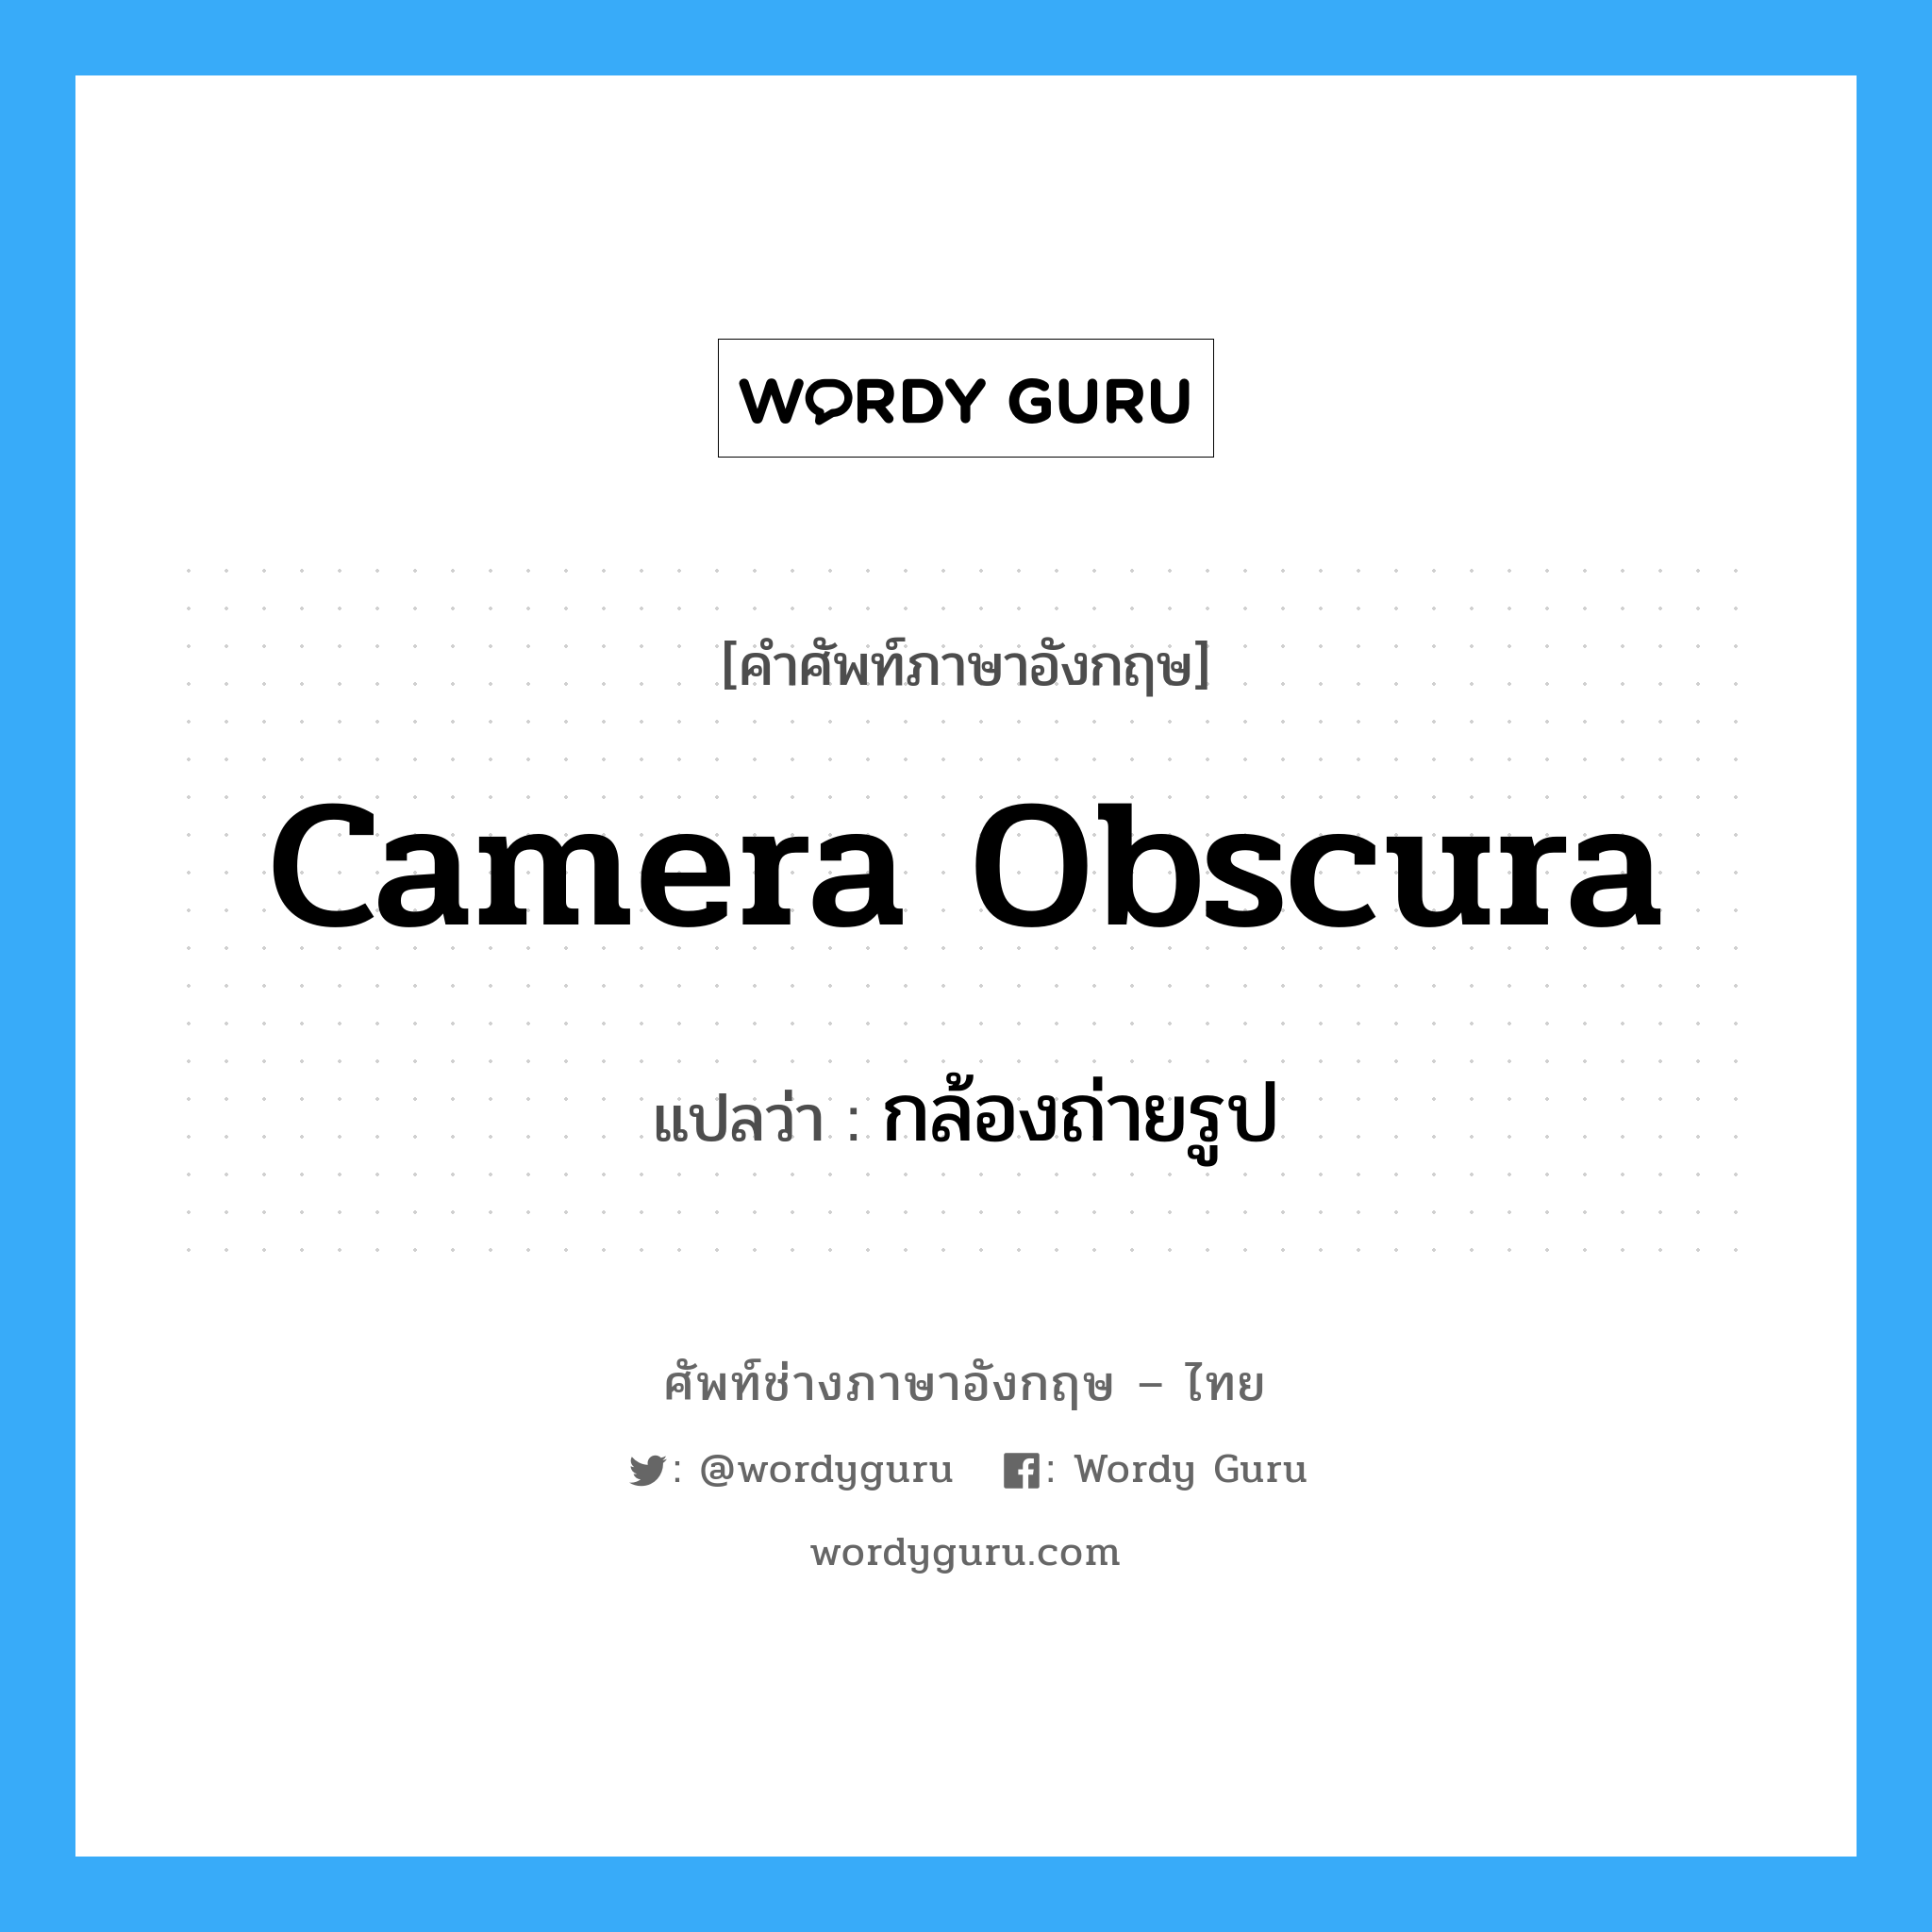 กล้องถ่ายรูป ภาษาอังกฤษ?, คำศัพท์ช่างภาษาอังกฤษ - ไทย กล้องถ่ายรูป คำศัพท์ภาษาอังกฤษ กล้องถ่ายรูป แปลว่า camera obscura